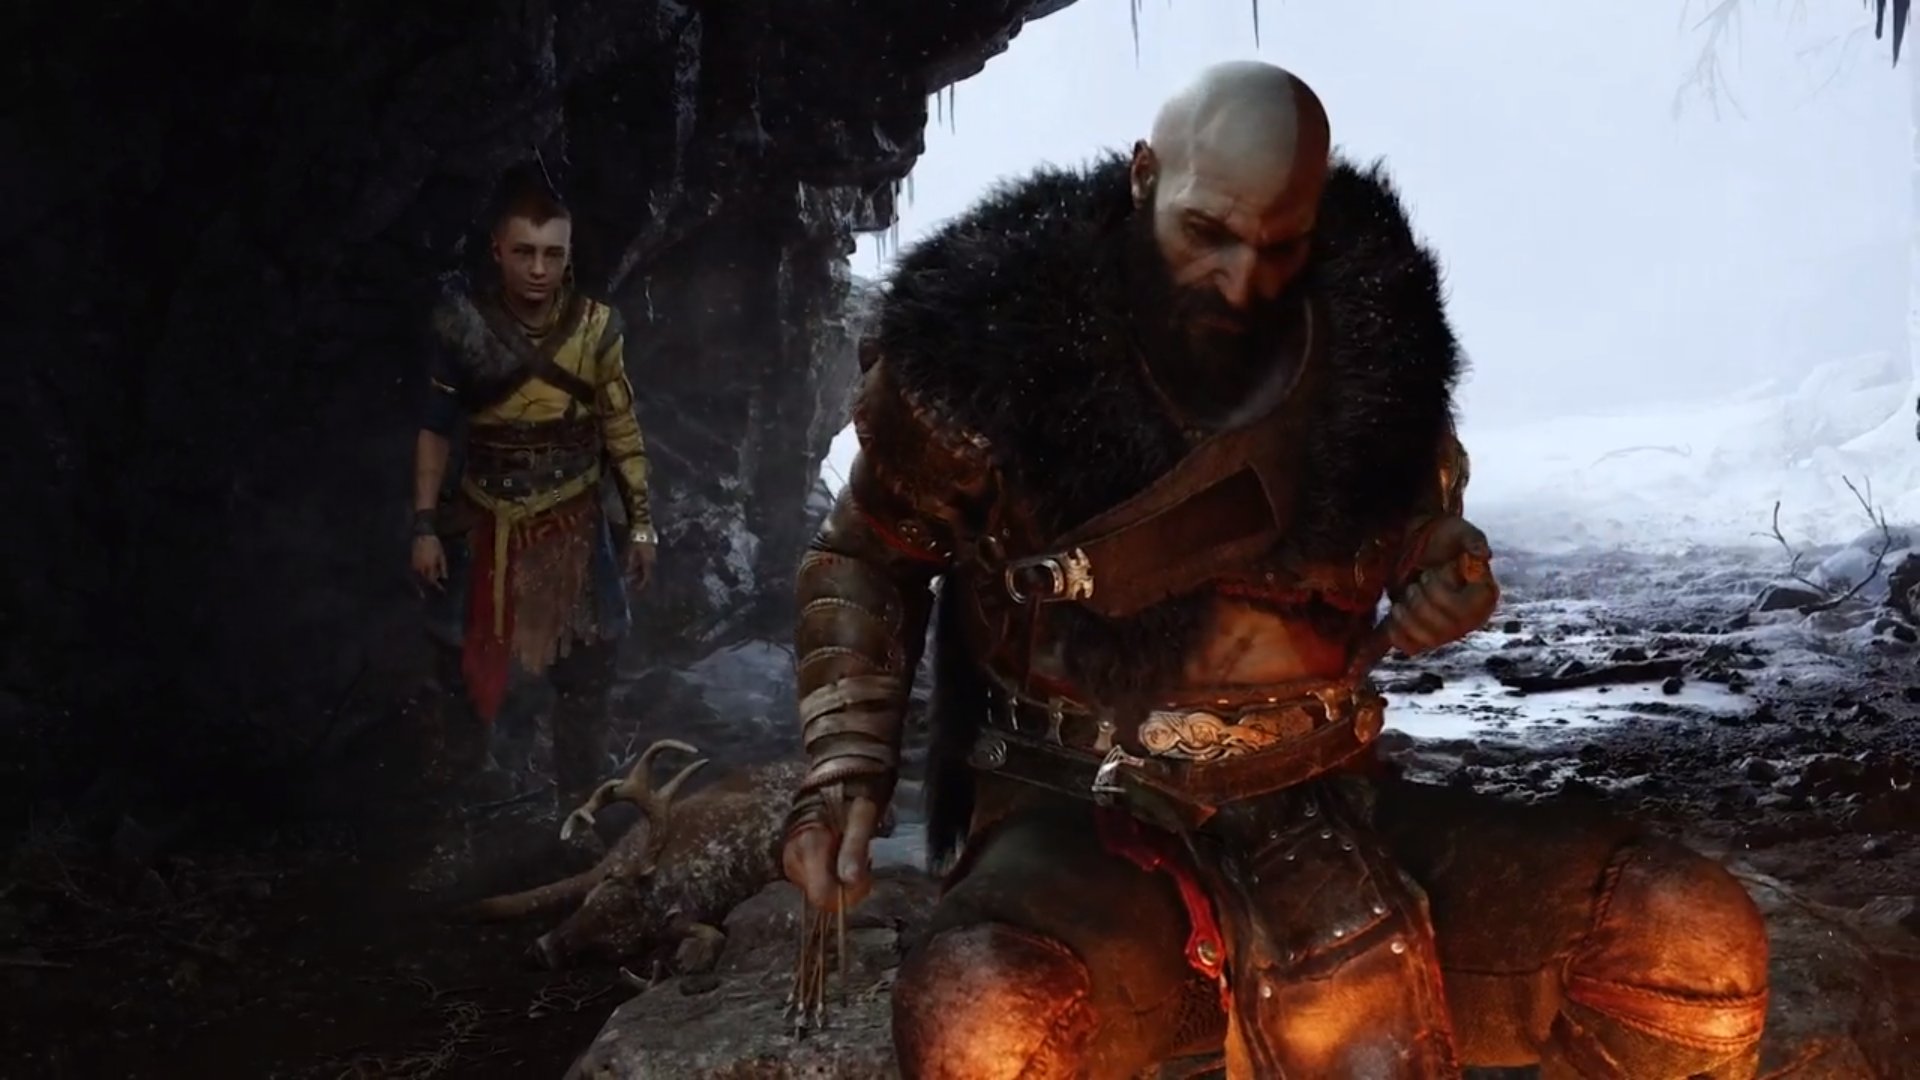 God Of War Ragnarök - PlayStation Showcase 2021 Reveal Trailer